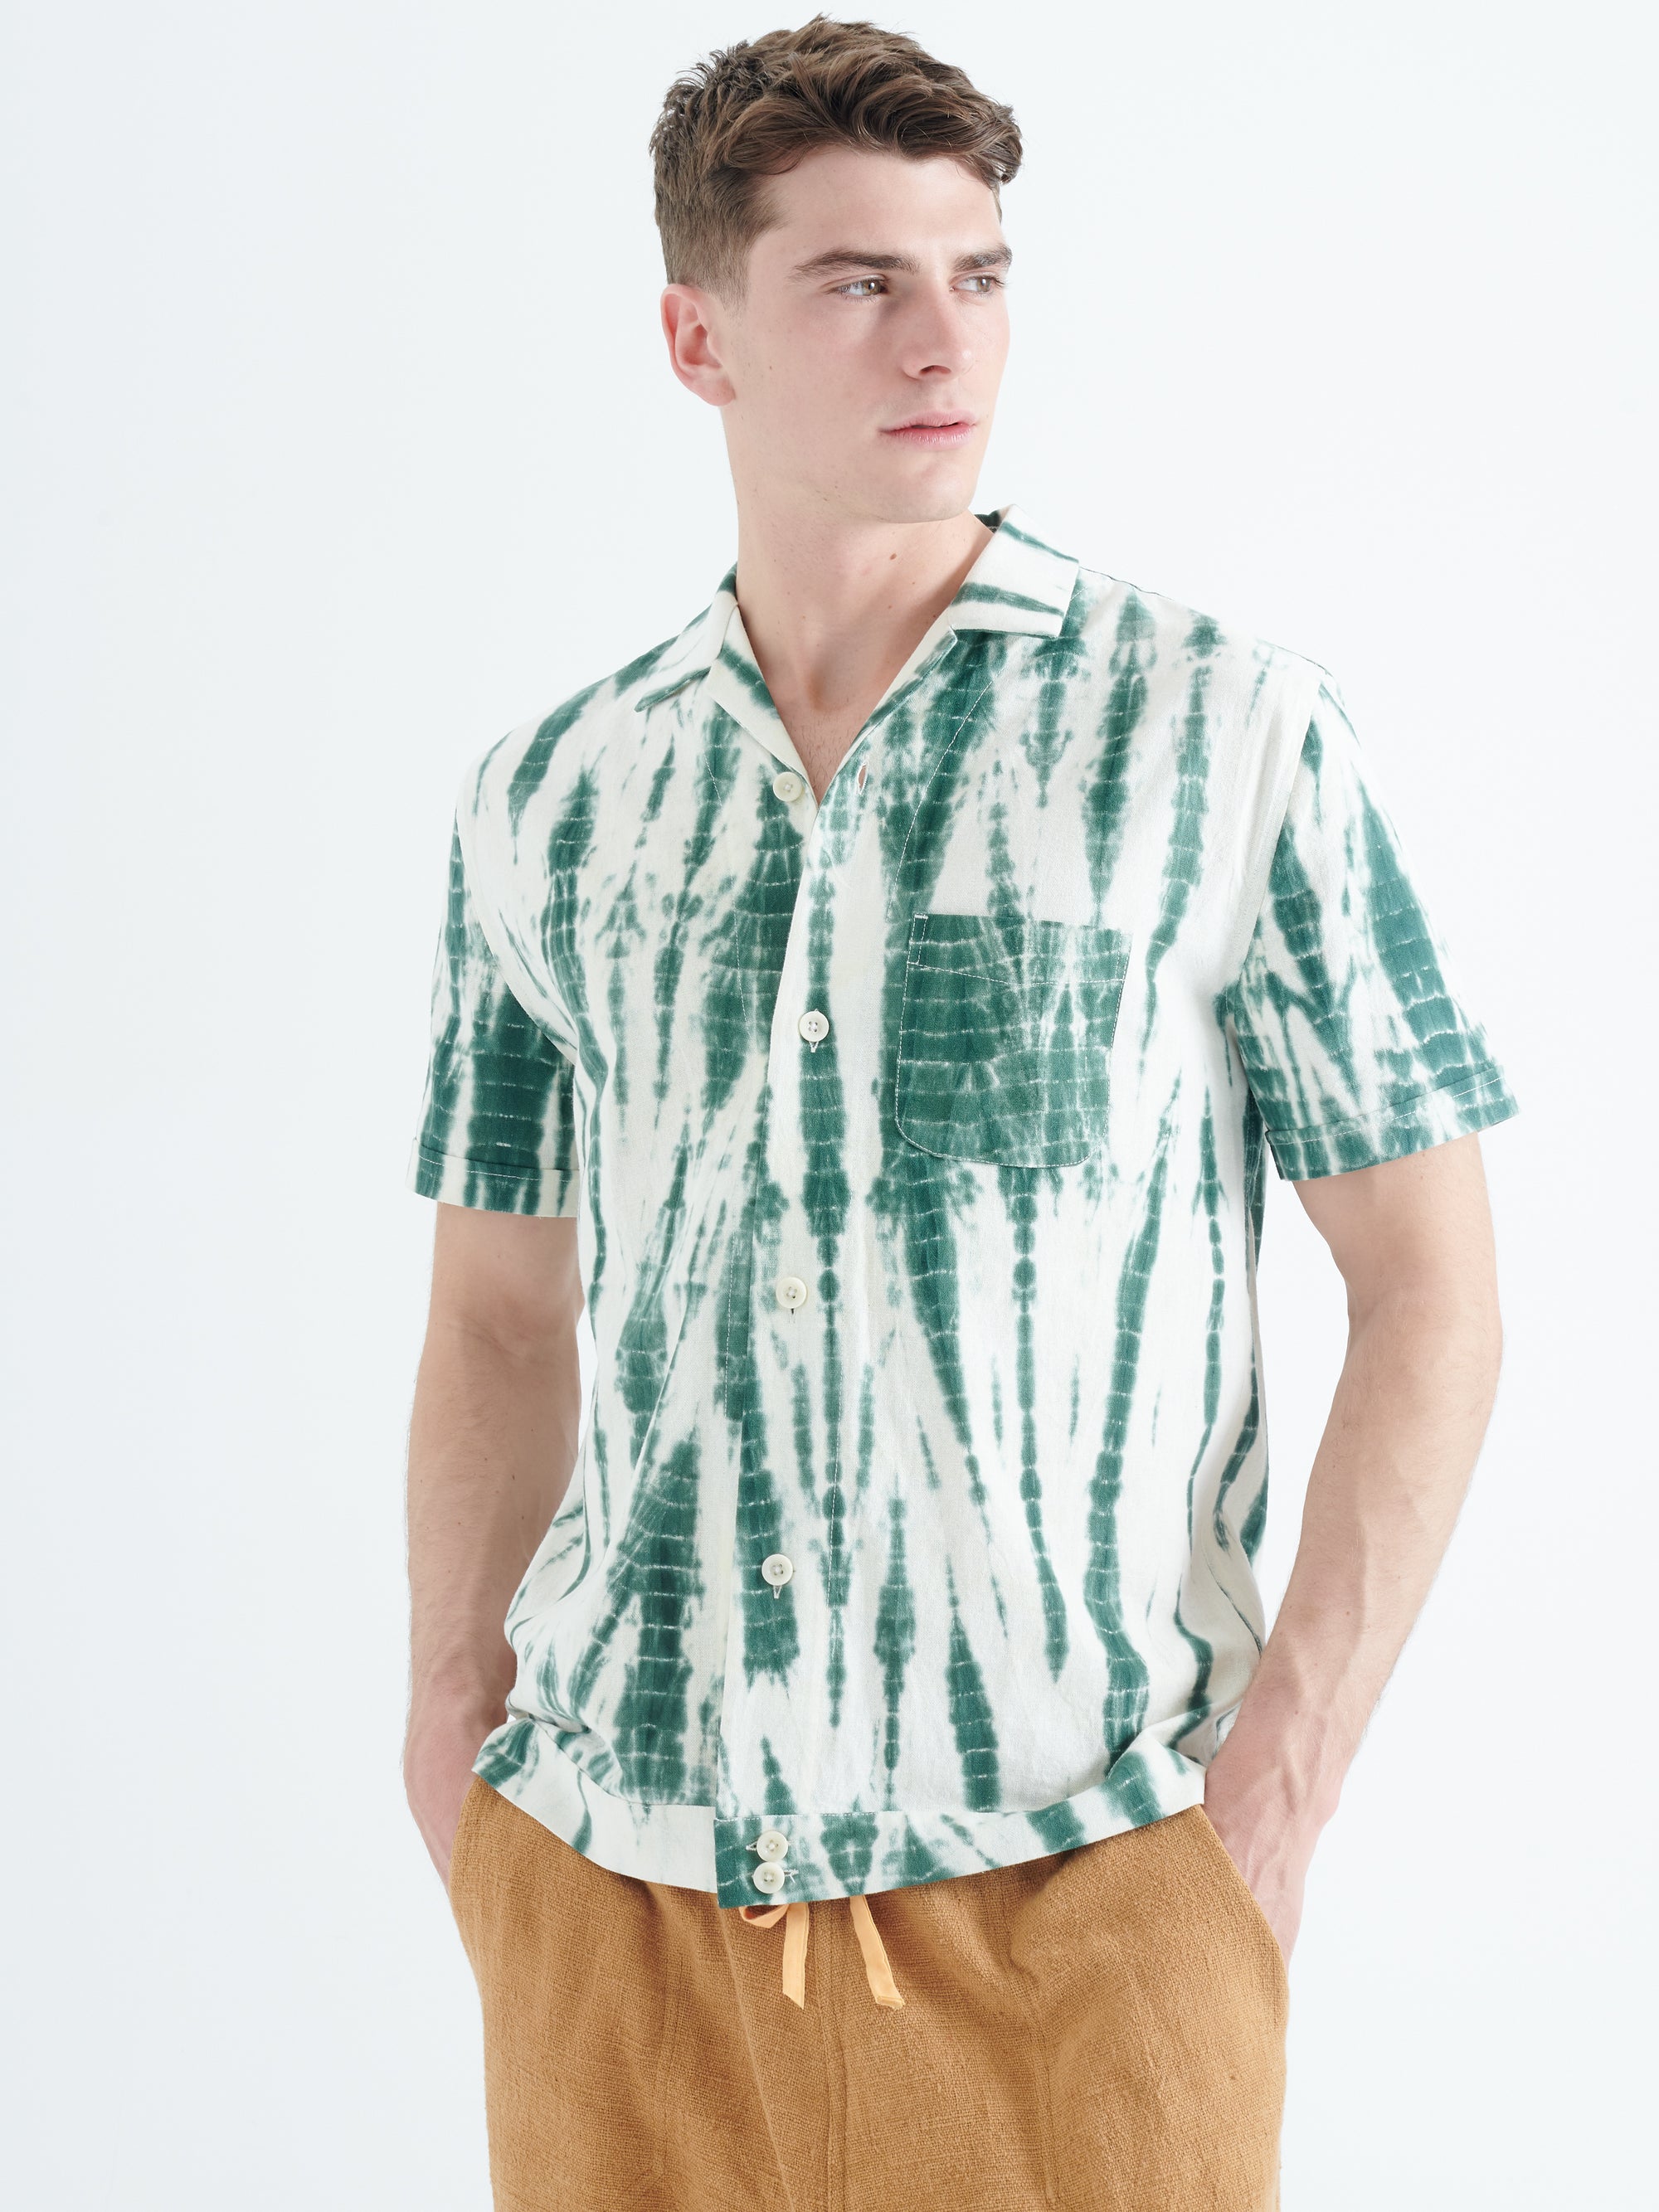 Paraiso Cotton Shirt in Green Tye-Dye